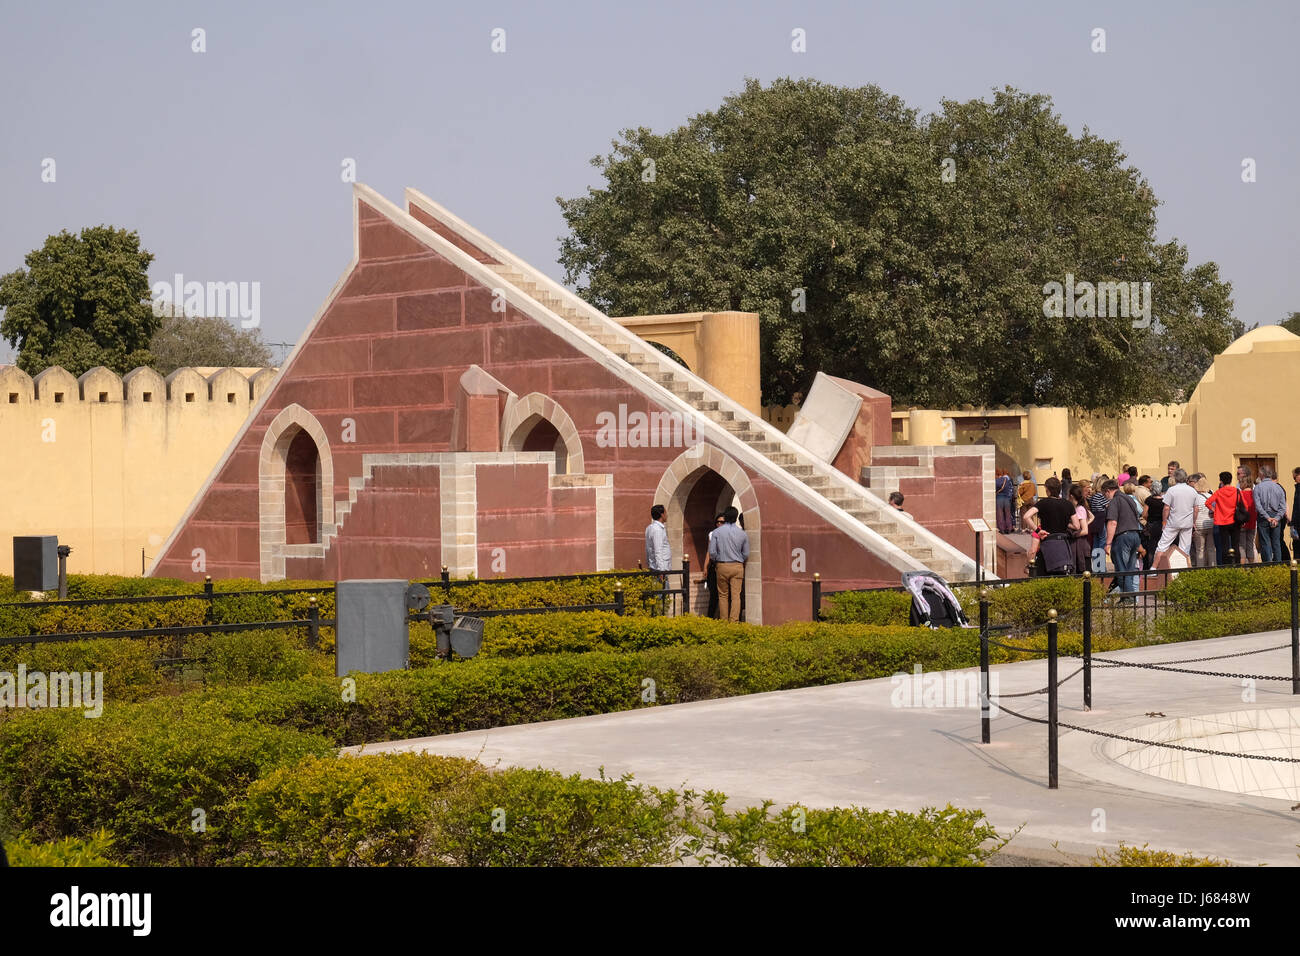 Famoso Osservatorio Jantar Mantar, una collezione enorme di strumenti astronomici a Jaipur, Rajasthan, India Foto Stock